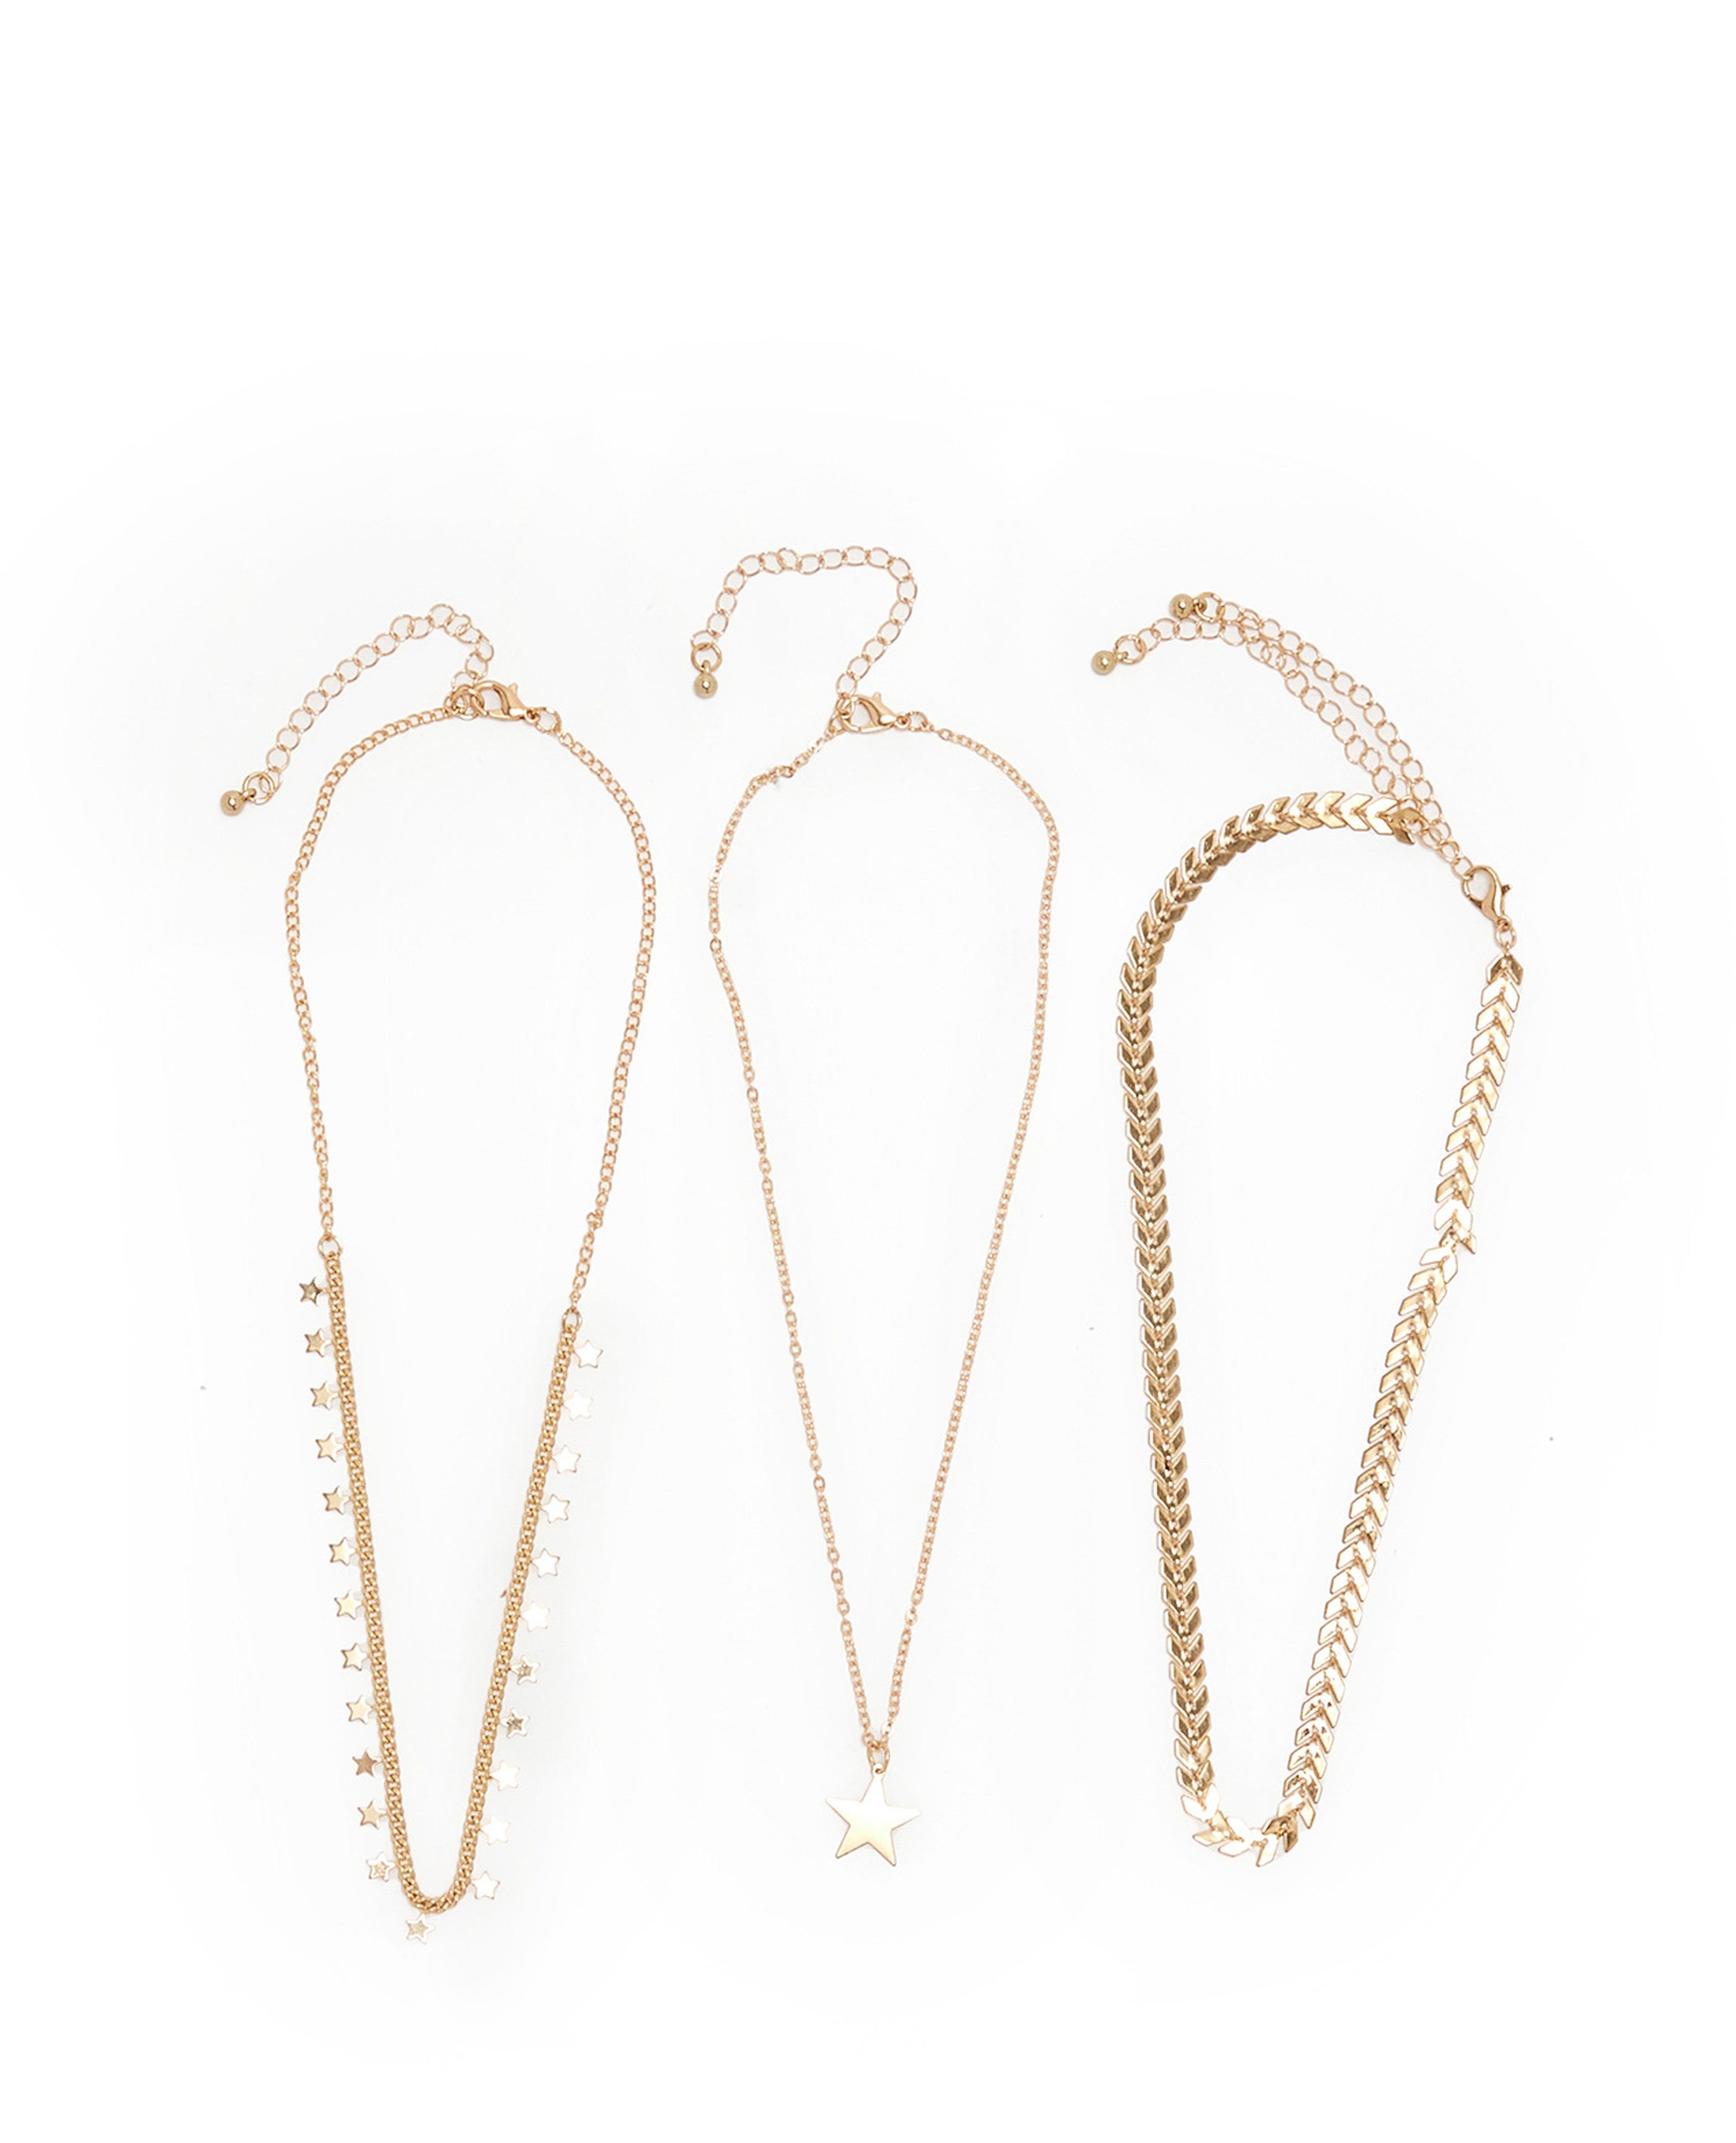 3 Piece Gold-Tone Necklaces